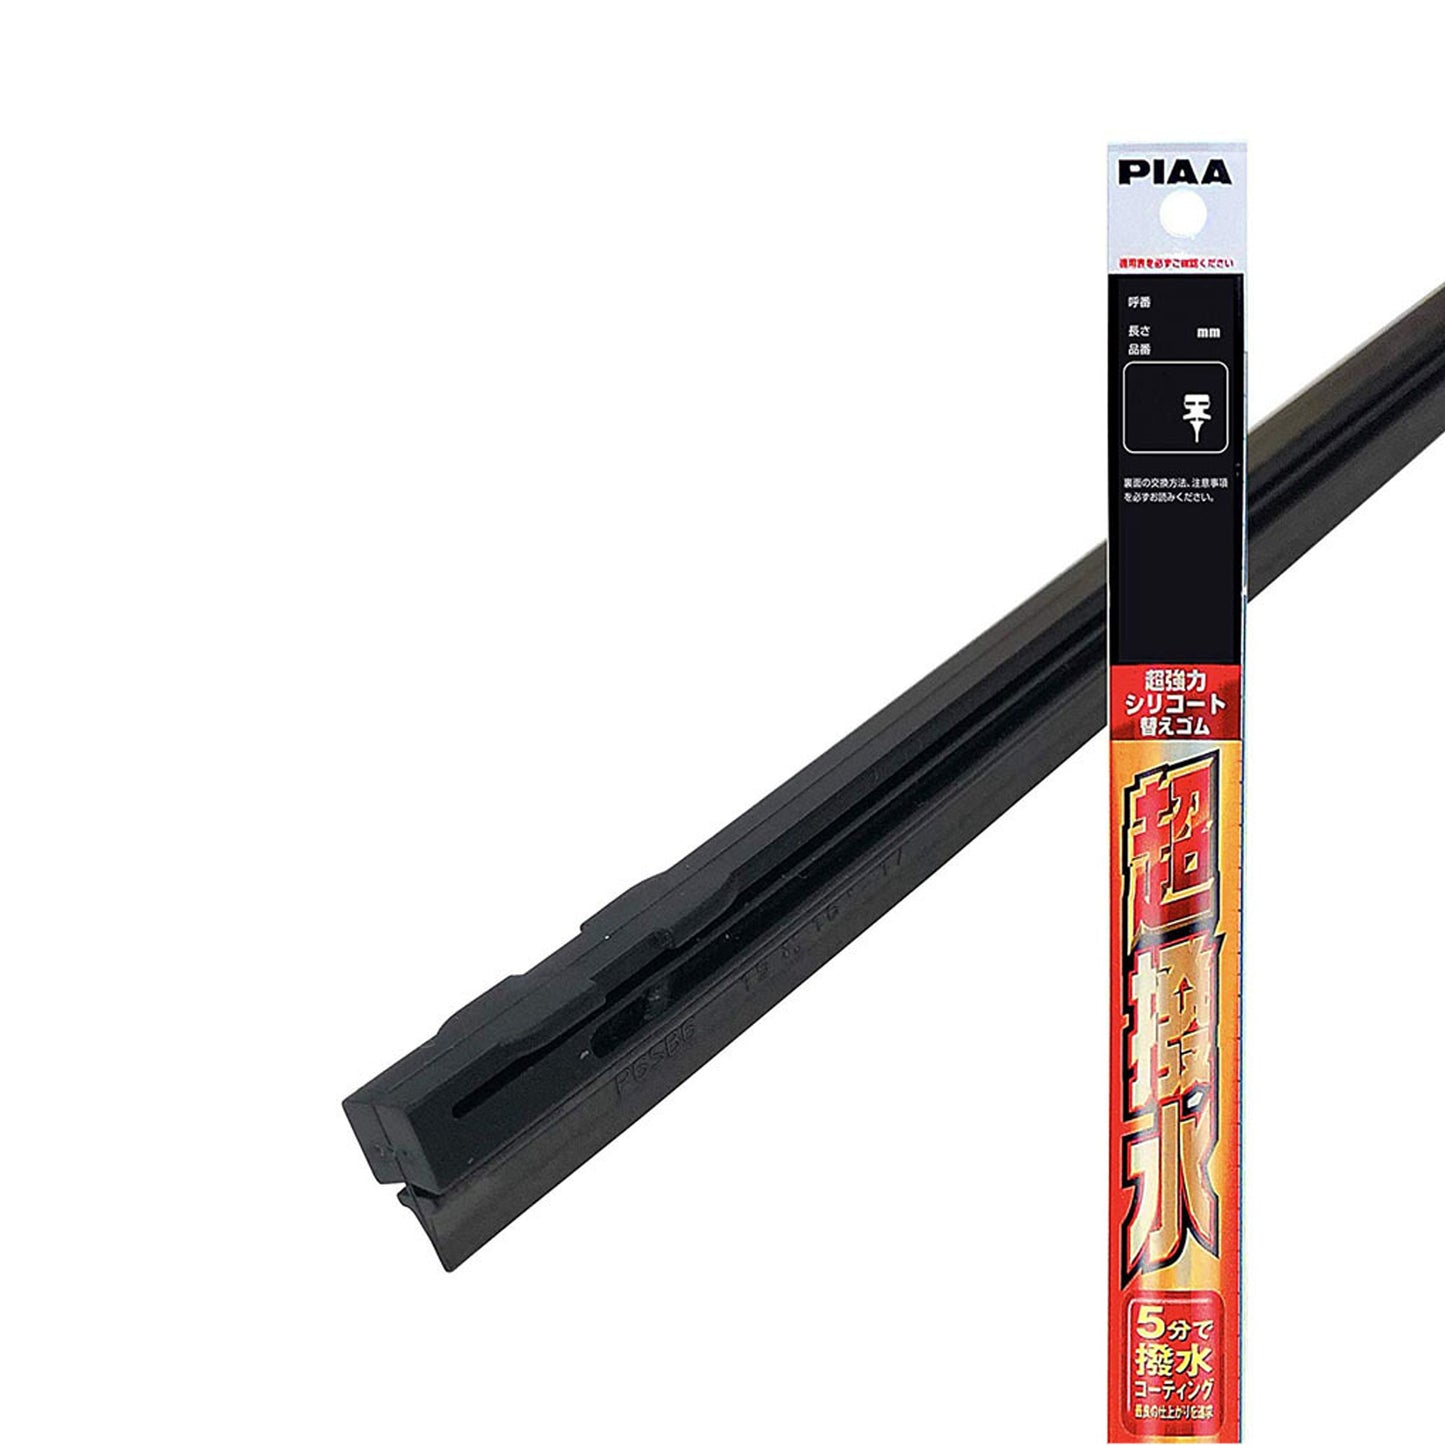 PIAA Silicone Wiper Refill for Uniblade (28") ( 28"- 10.2mm ) (Barcode: 4960311023678 )